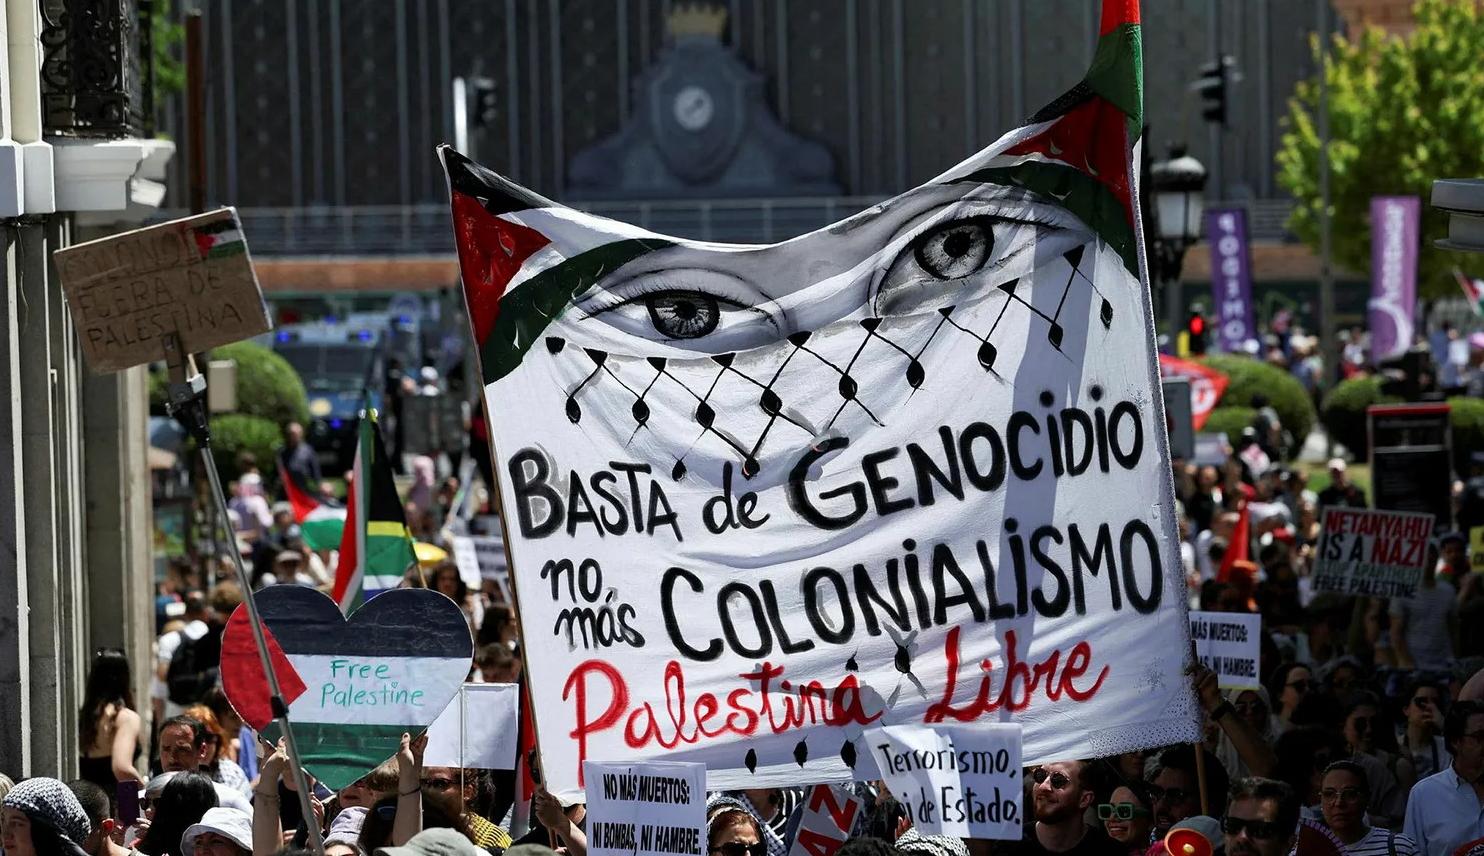 تظاهرة في مدريد تدعو إلى وقف حرب الإبادة والاعتراف بالدولة الفلسطينية (نقلاً عن "هآرتس")